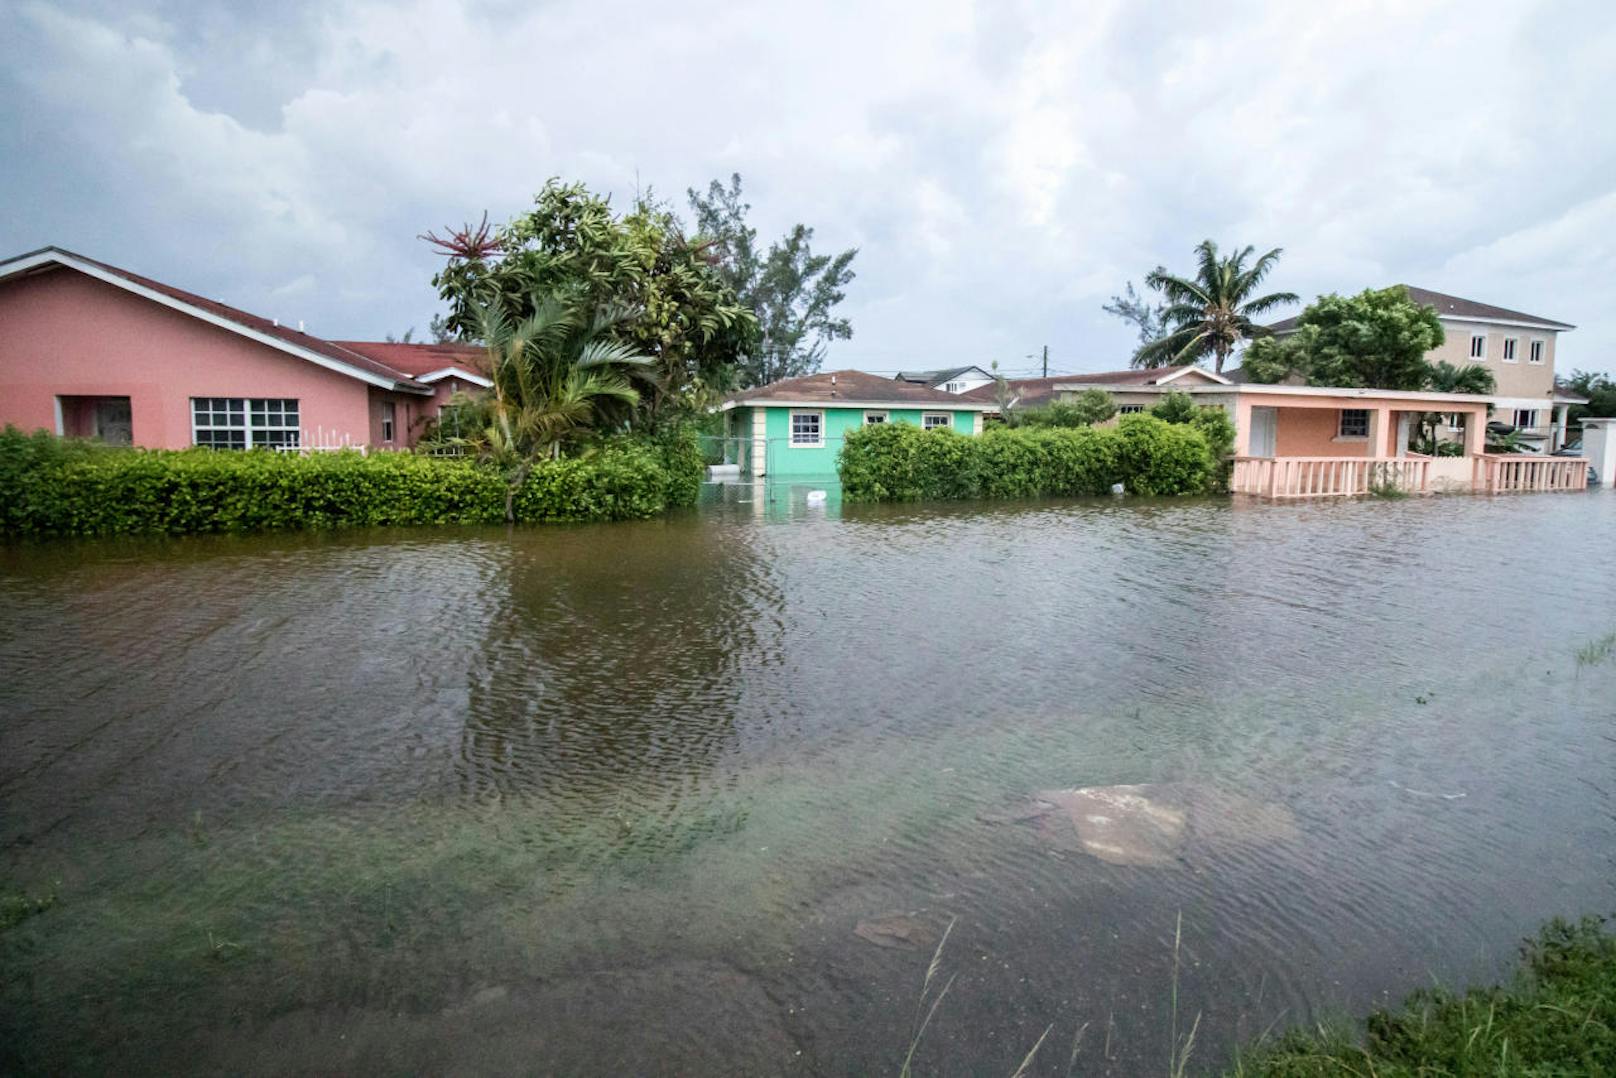 Eine Sturmflut, verursacht durch den Hurrikan, ließ den Meeresspiegel bis zu 7 Meter ansteigen. Auch in oberen Etagen waren die Einwohner auf den Bahamas vor dem Wasser nicht mehr sicher.